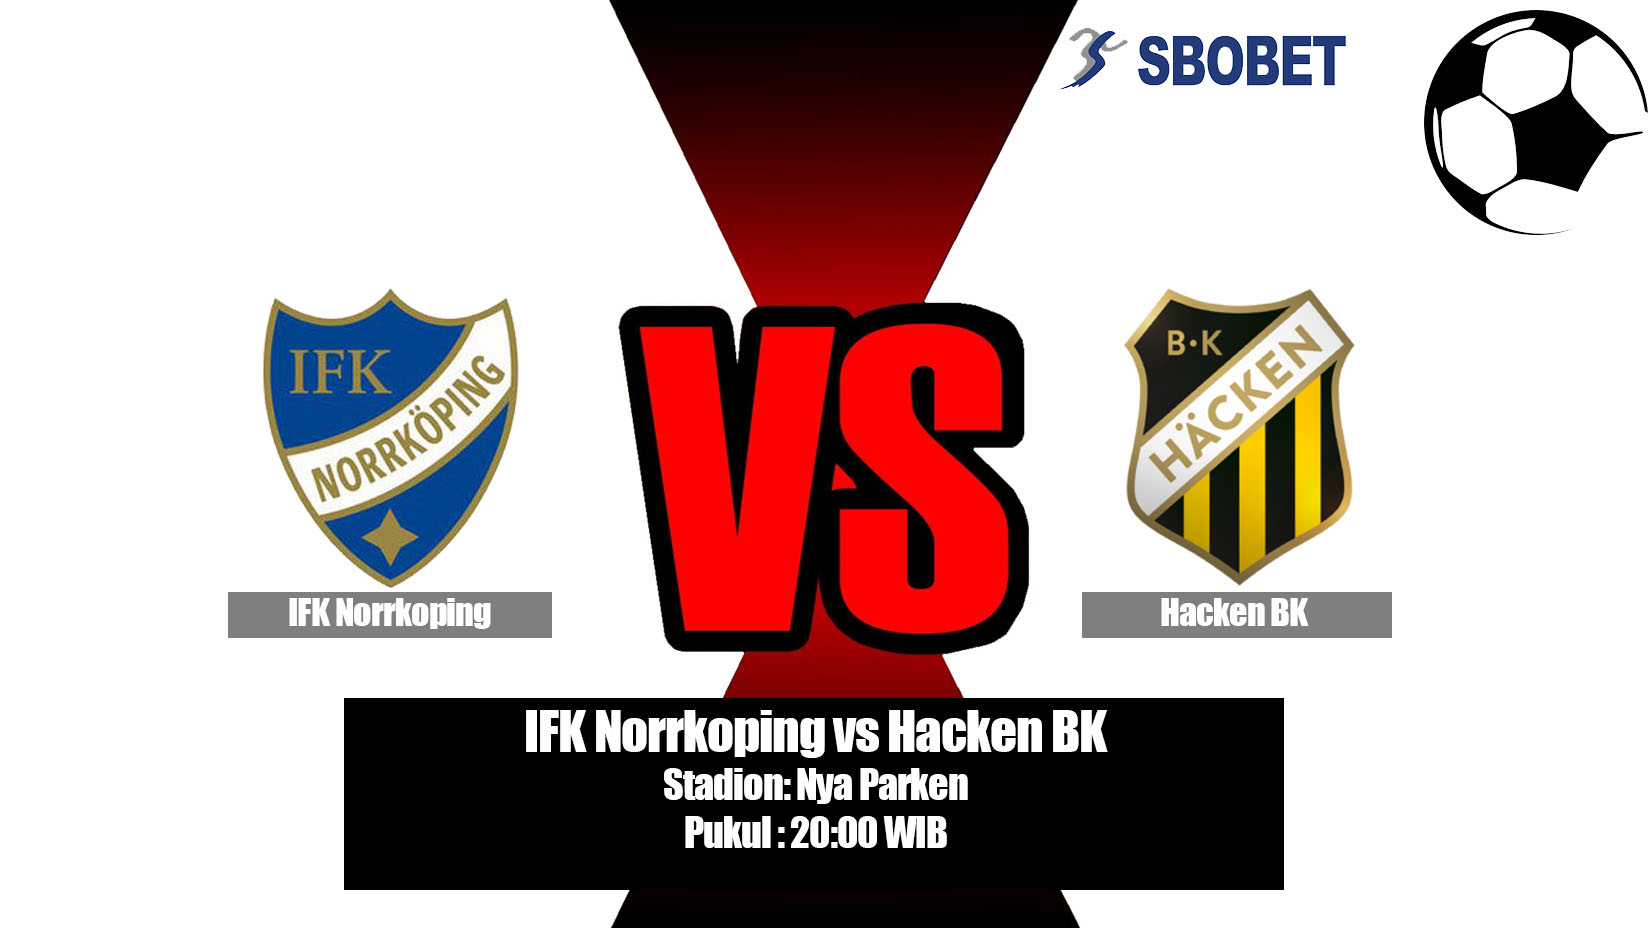 Prediksi Bola IFK Norrkoping vs Hacken BK 7 Juli 2019